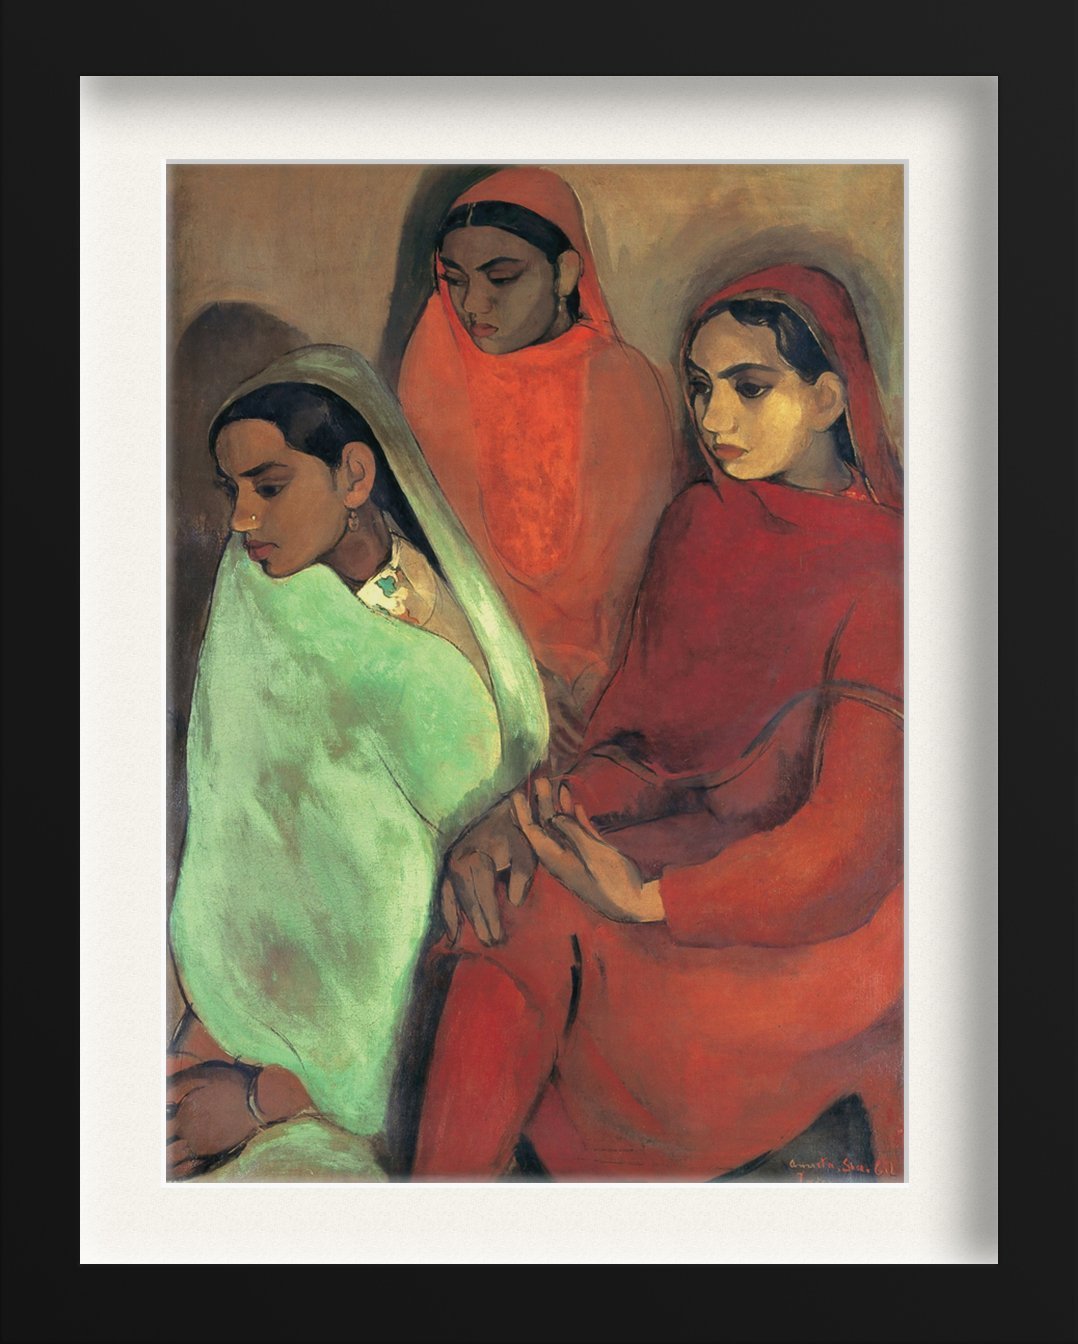 Group of Three Girls Painting - Meri Deewar - MeriDeewar